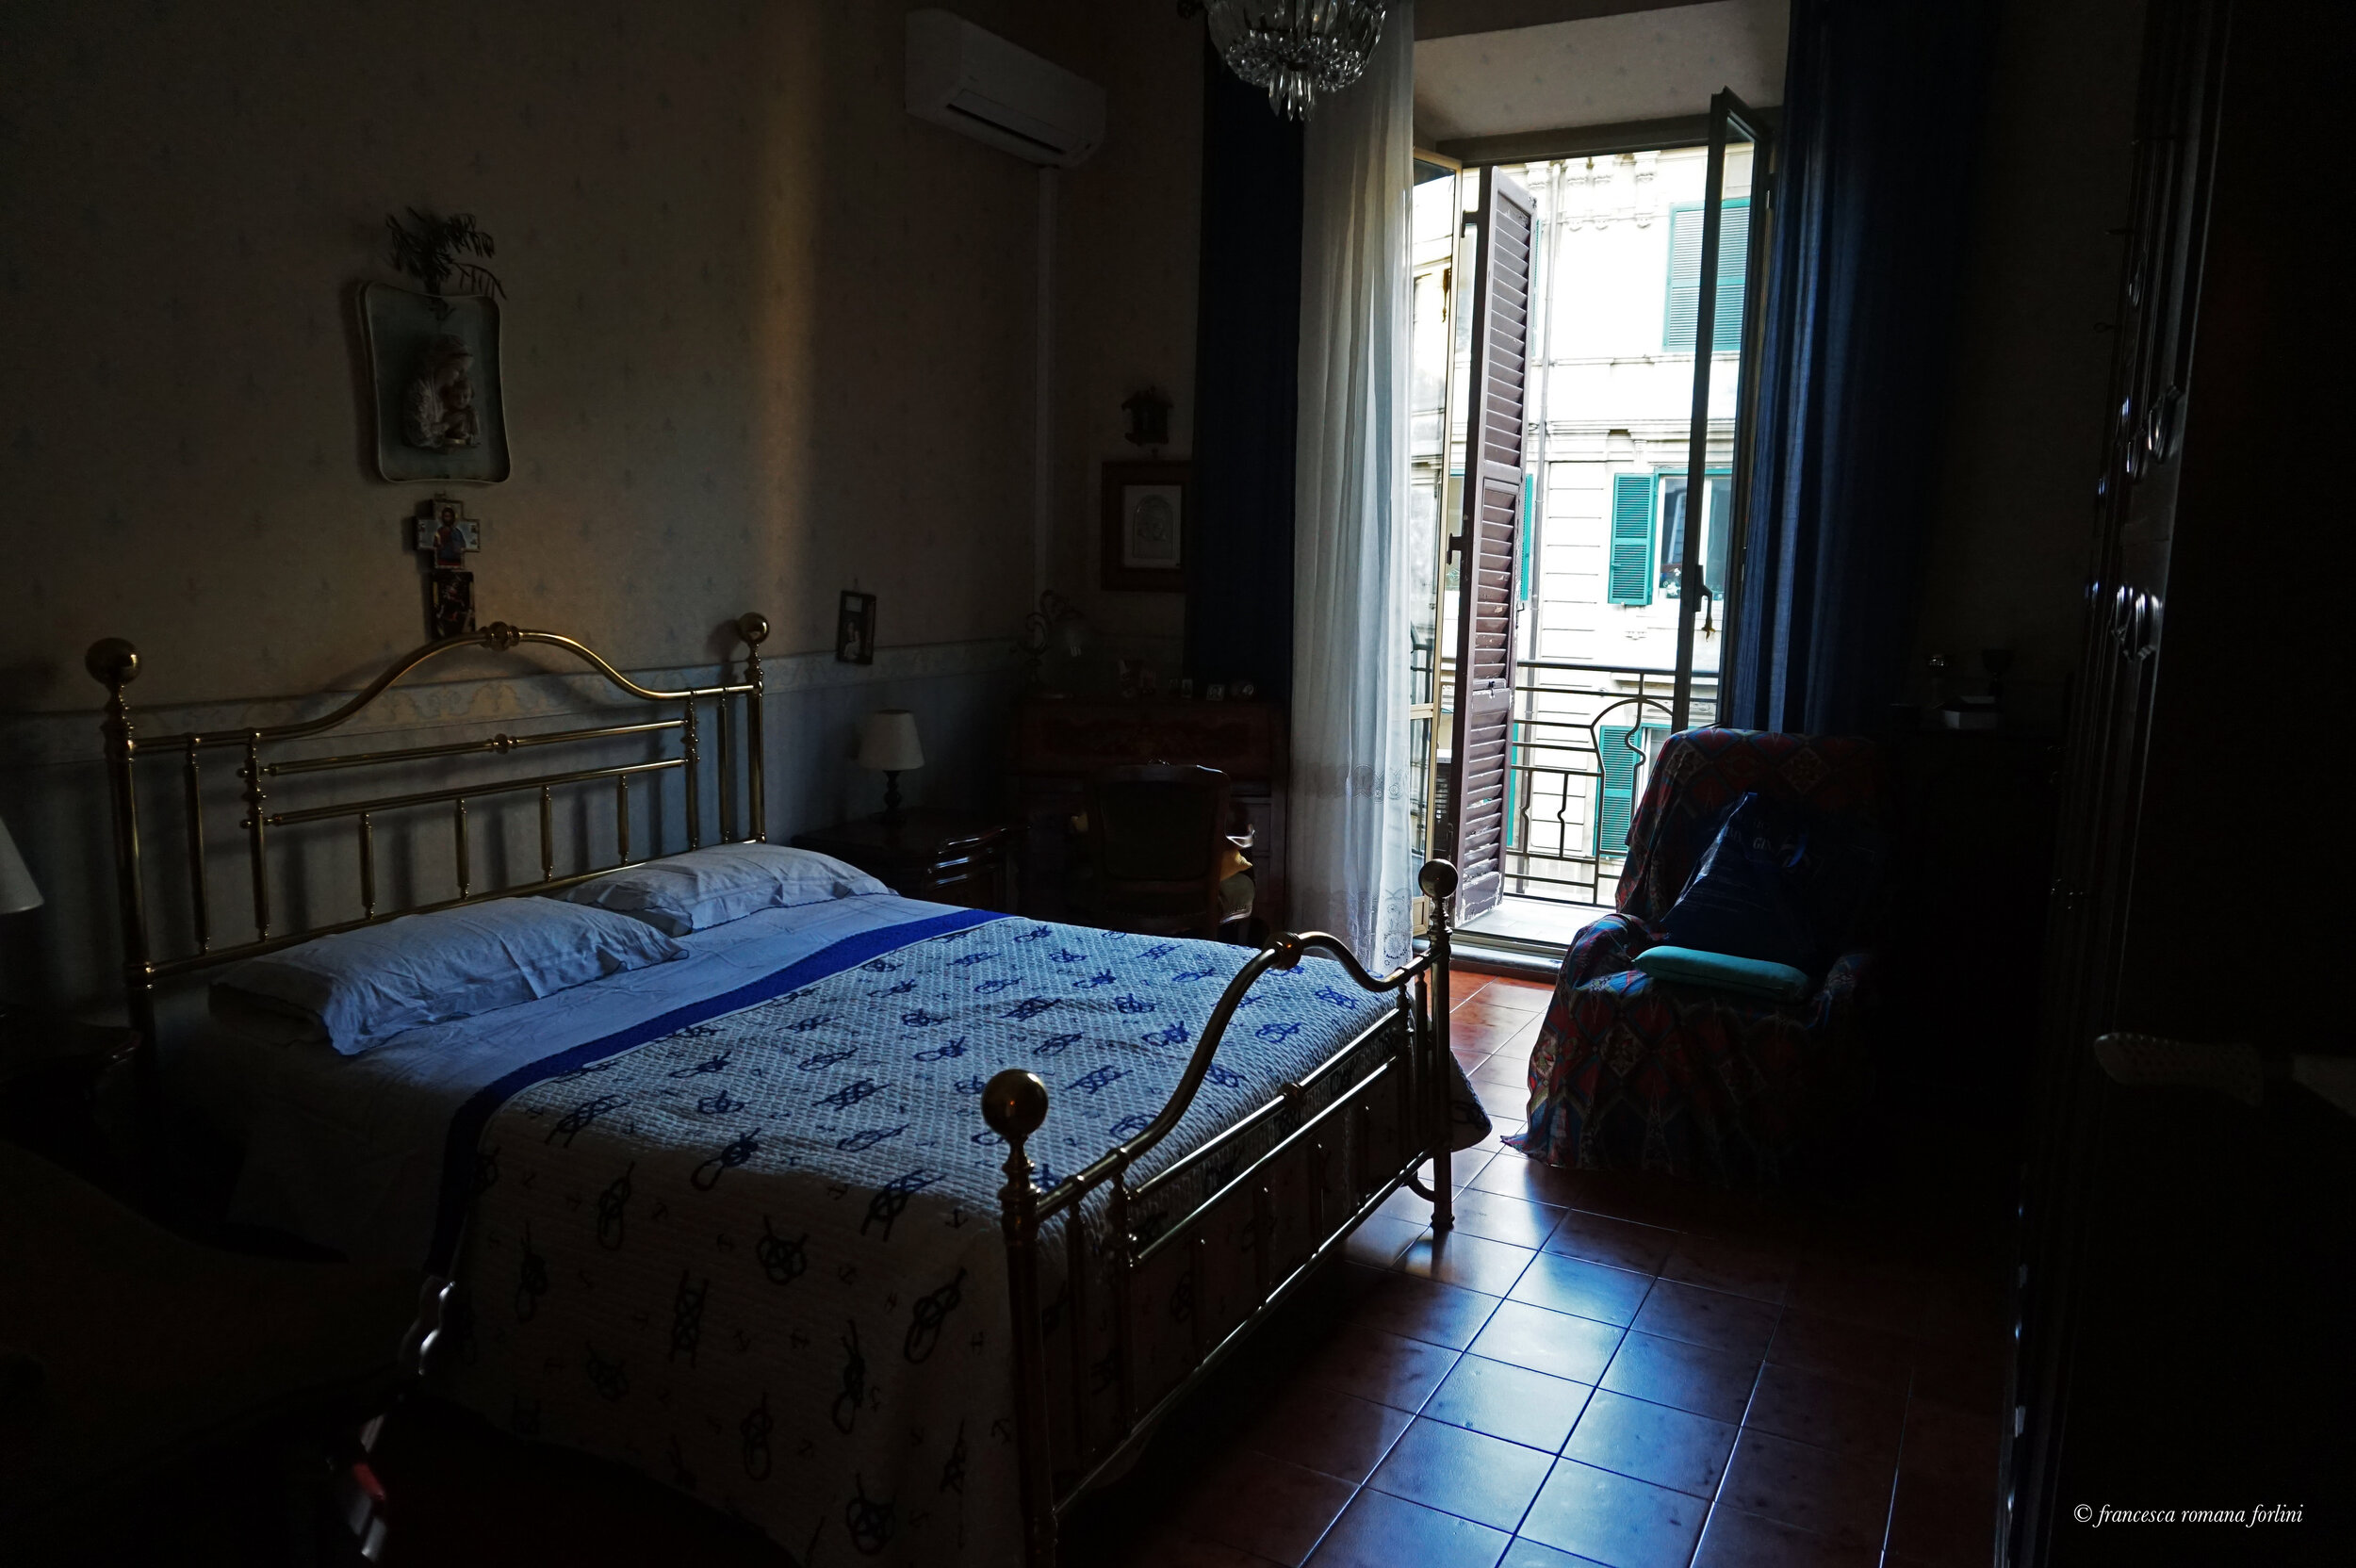  Bedroom. Apartment in Via Metauro, Rome. 2019 